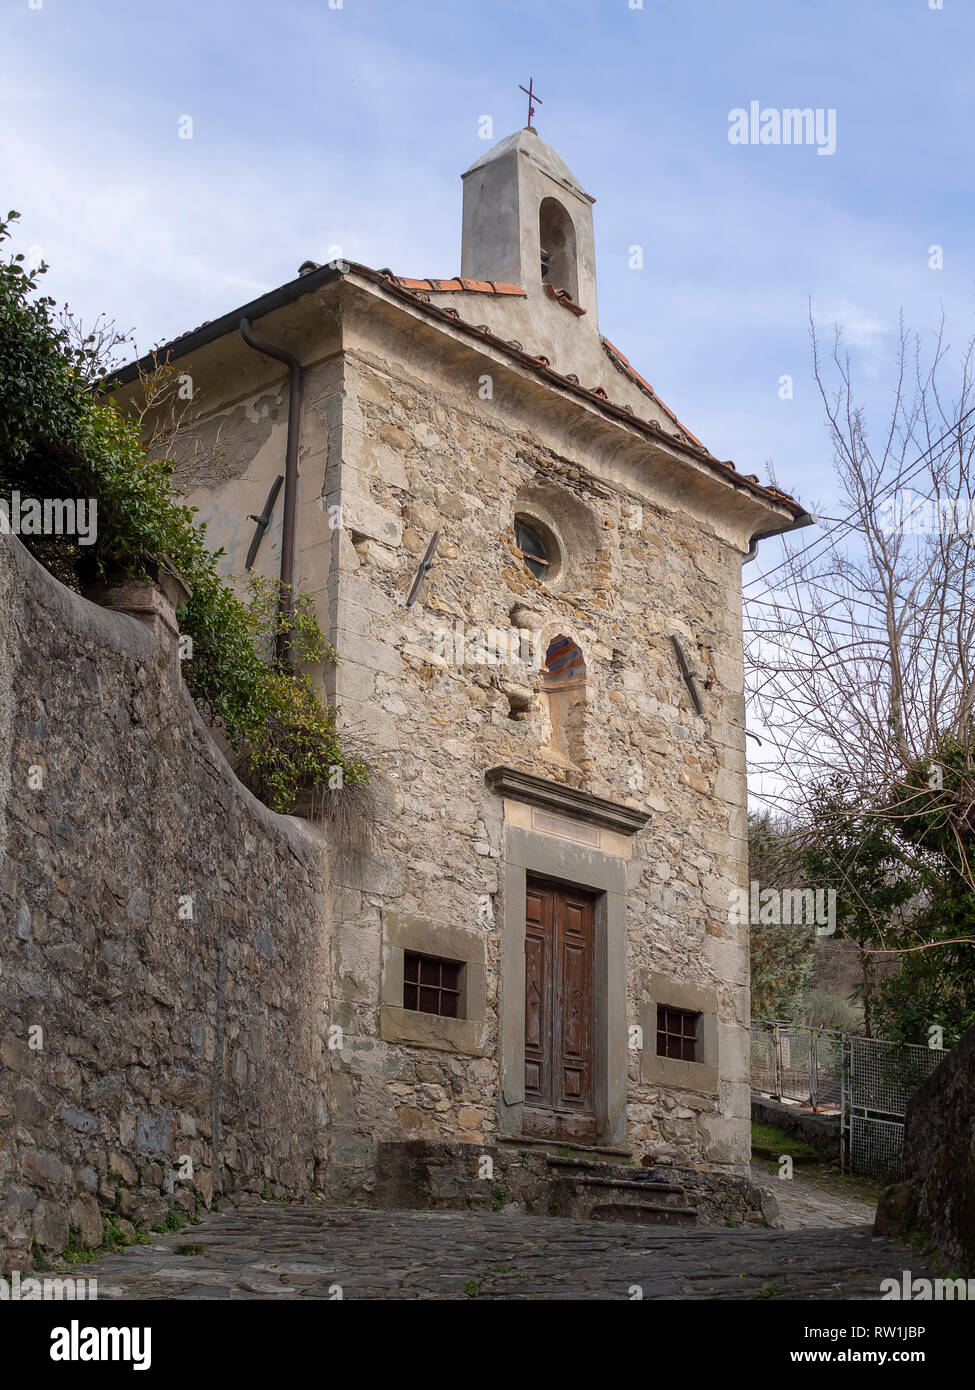 Piccolo edificio religioso, chiesa o pieve, Pognana villaggio nei pressi di Verrucola in Lunigiana del nord della Toscana, Italia. Foto Stock